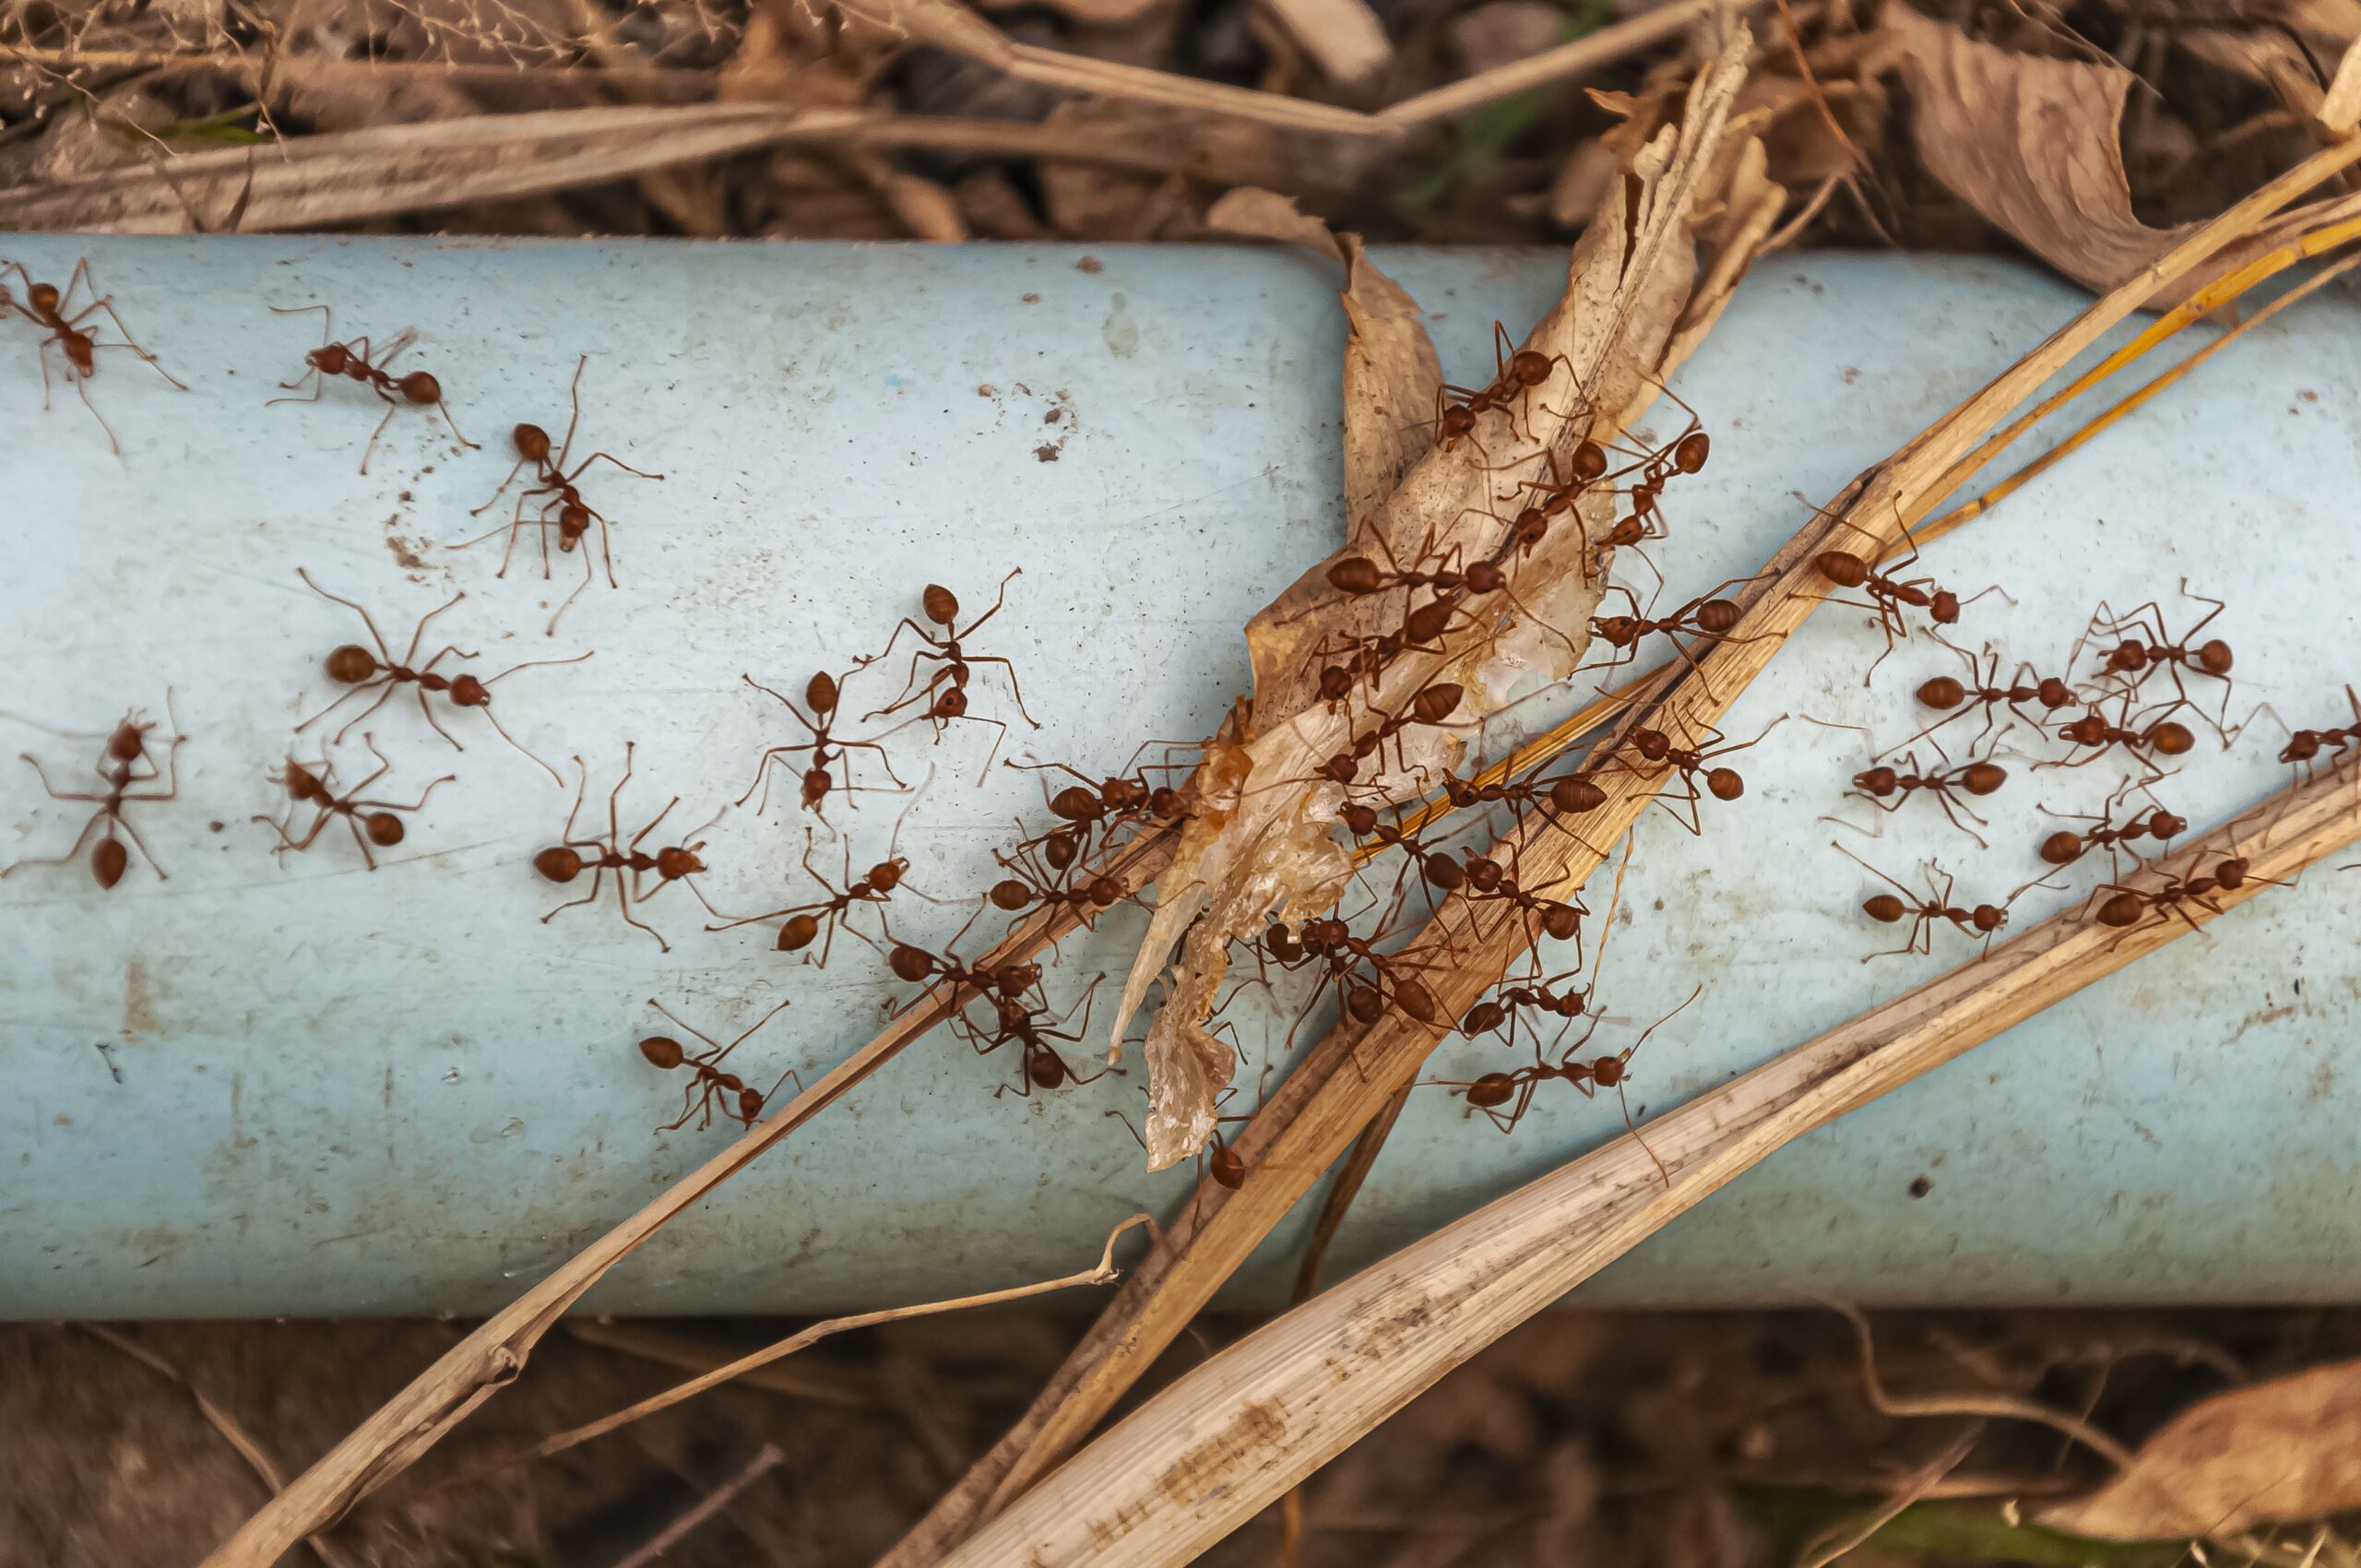 foto de formigas andando sobre um cano